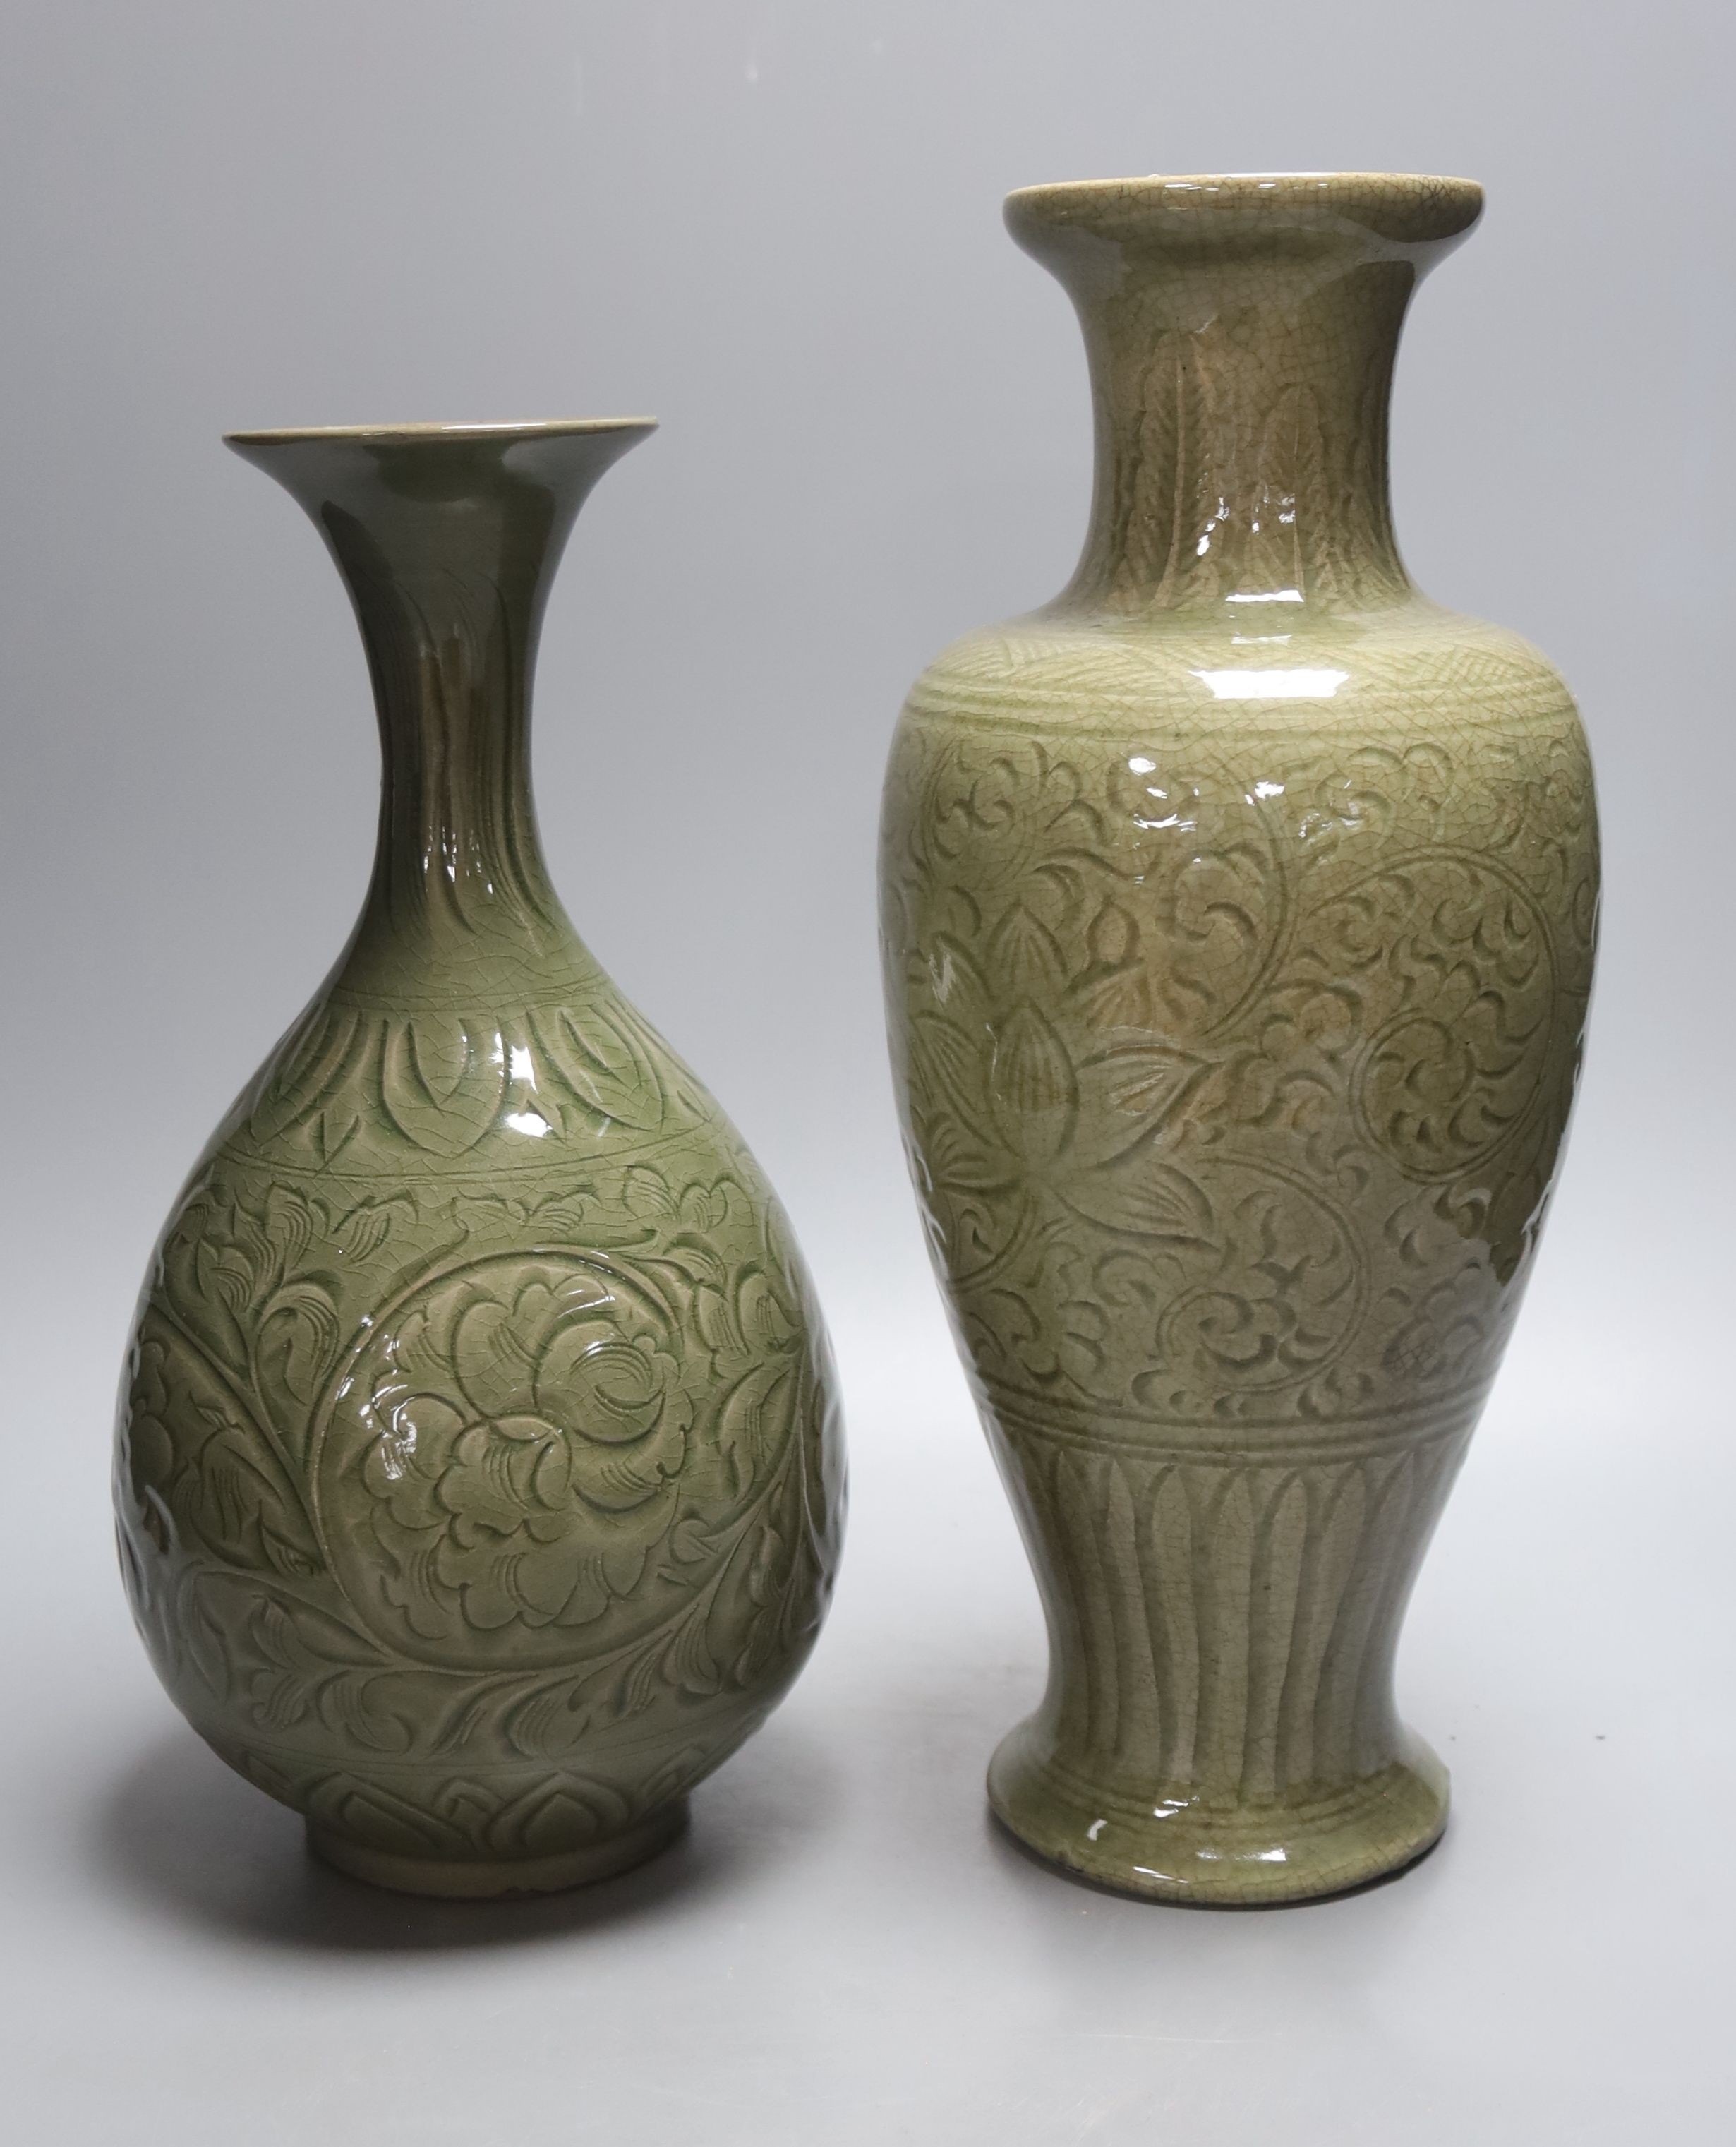 Two Chinese celadon glazed vases, tallest 36cm